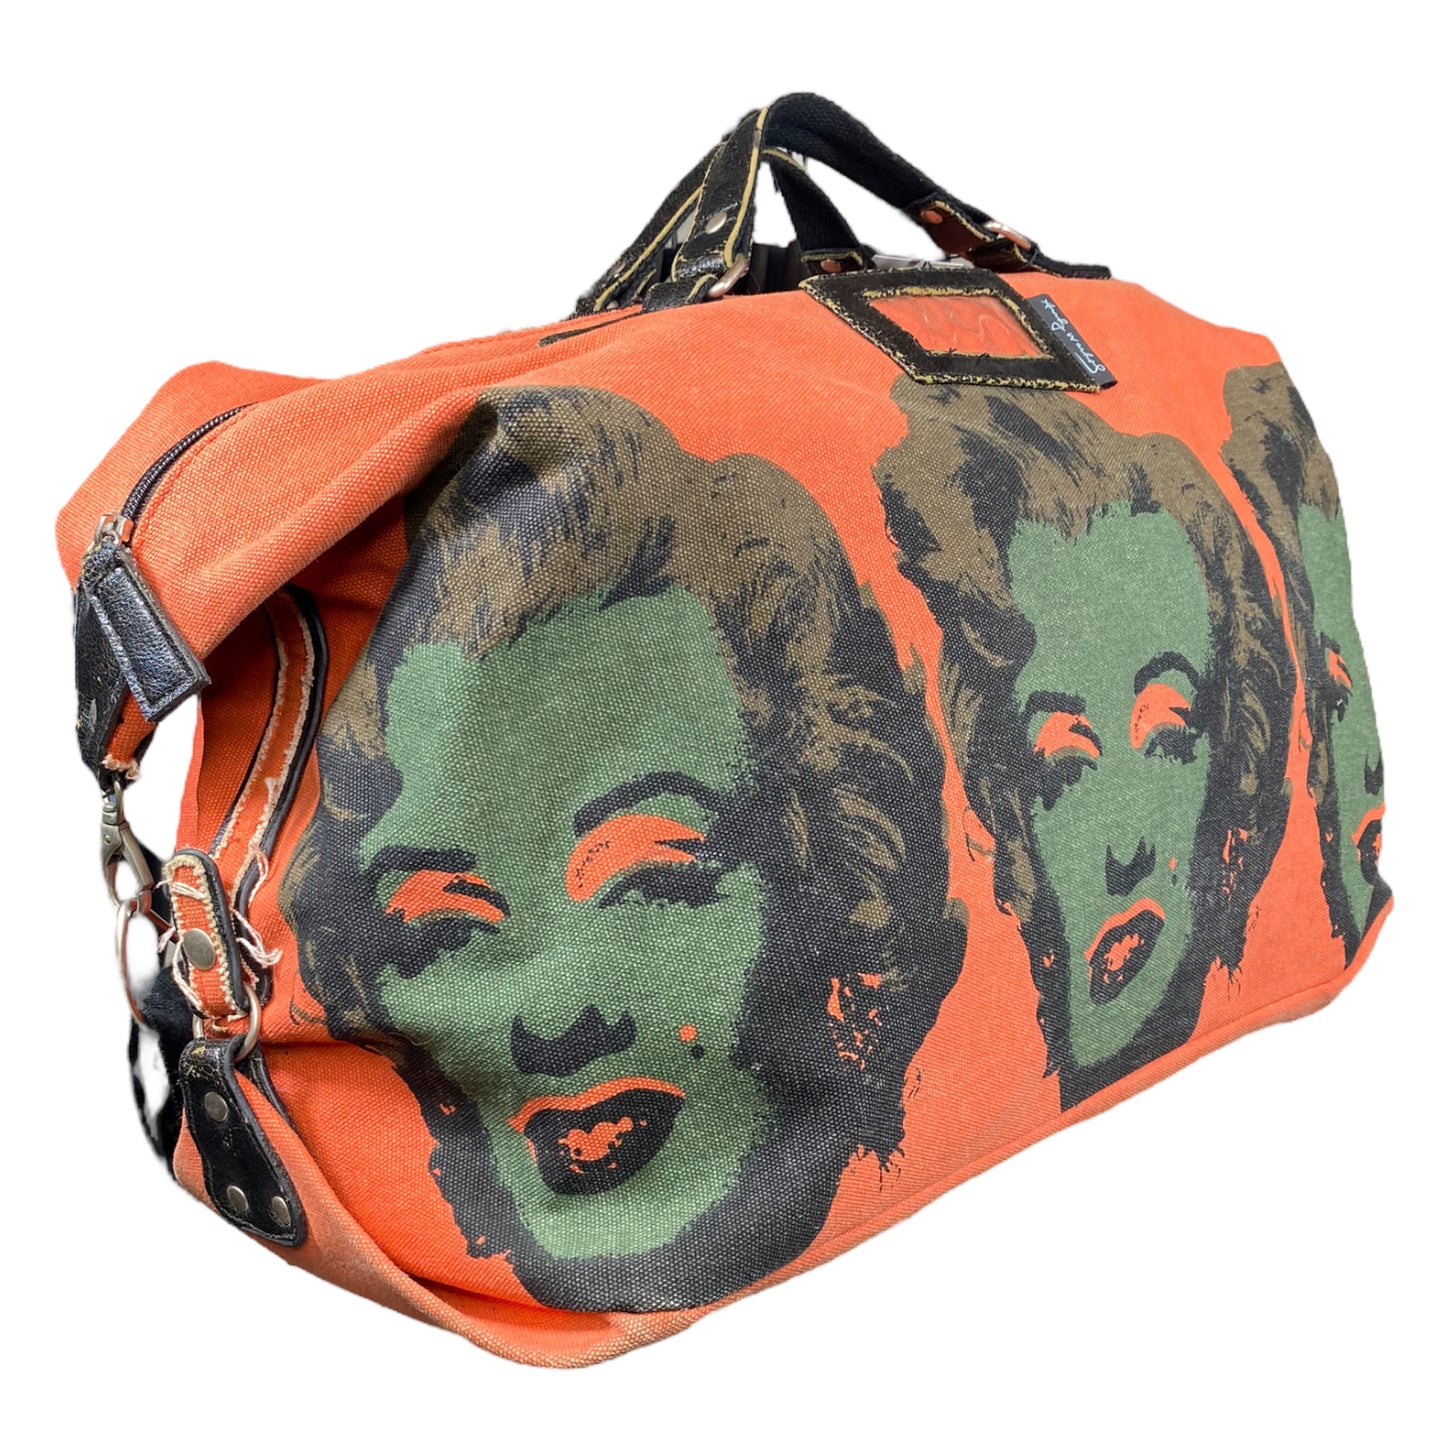 
                  
                    Vintage Andy Warhol Duffle Bag - "Marilyn Monroe"
                  
                